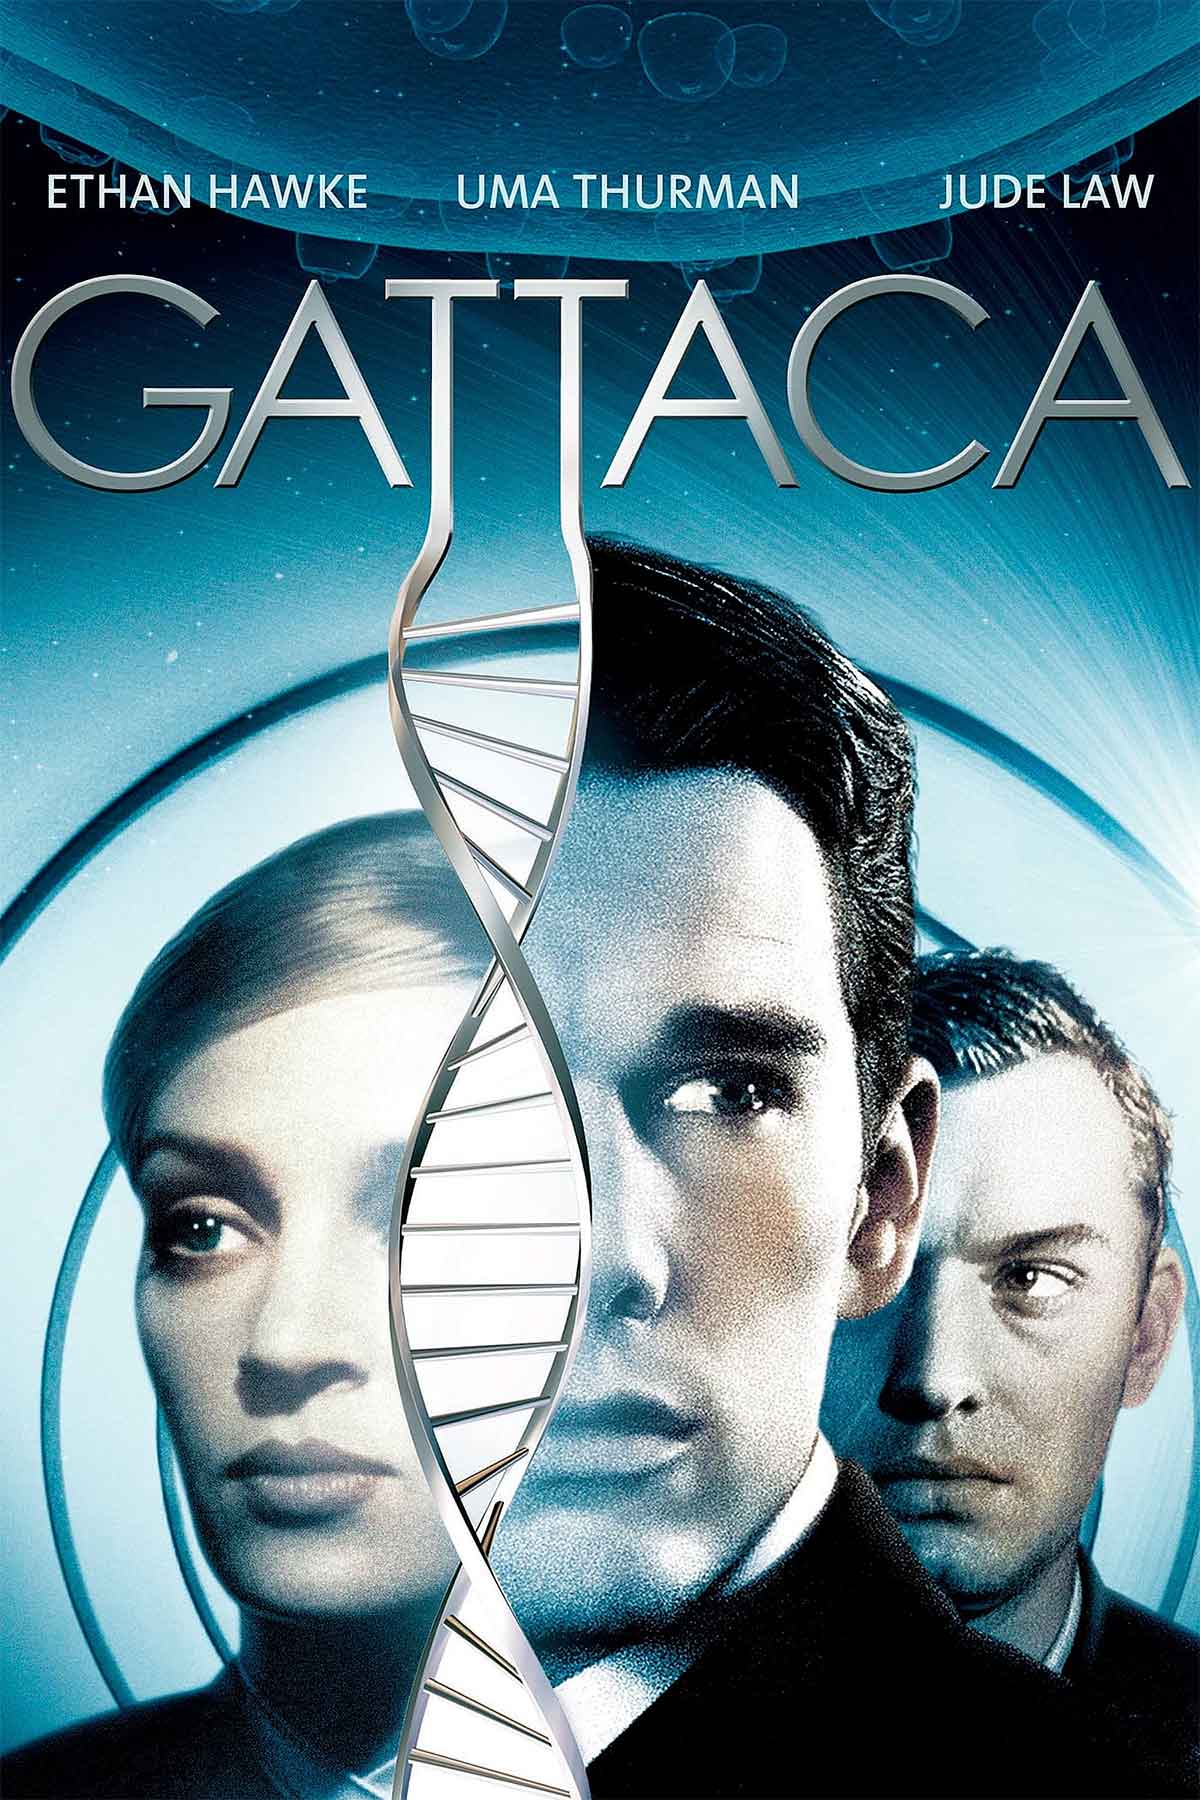 Gattaca poster 1997